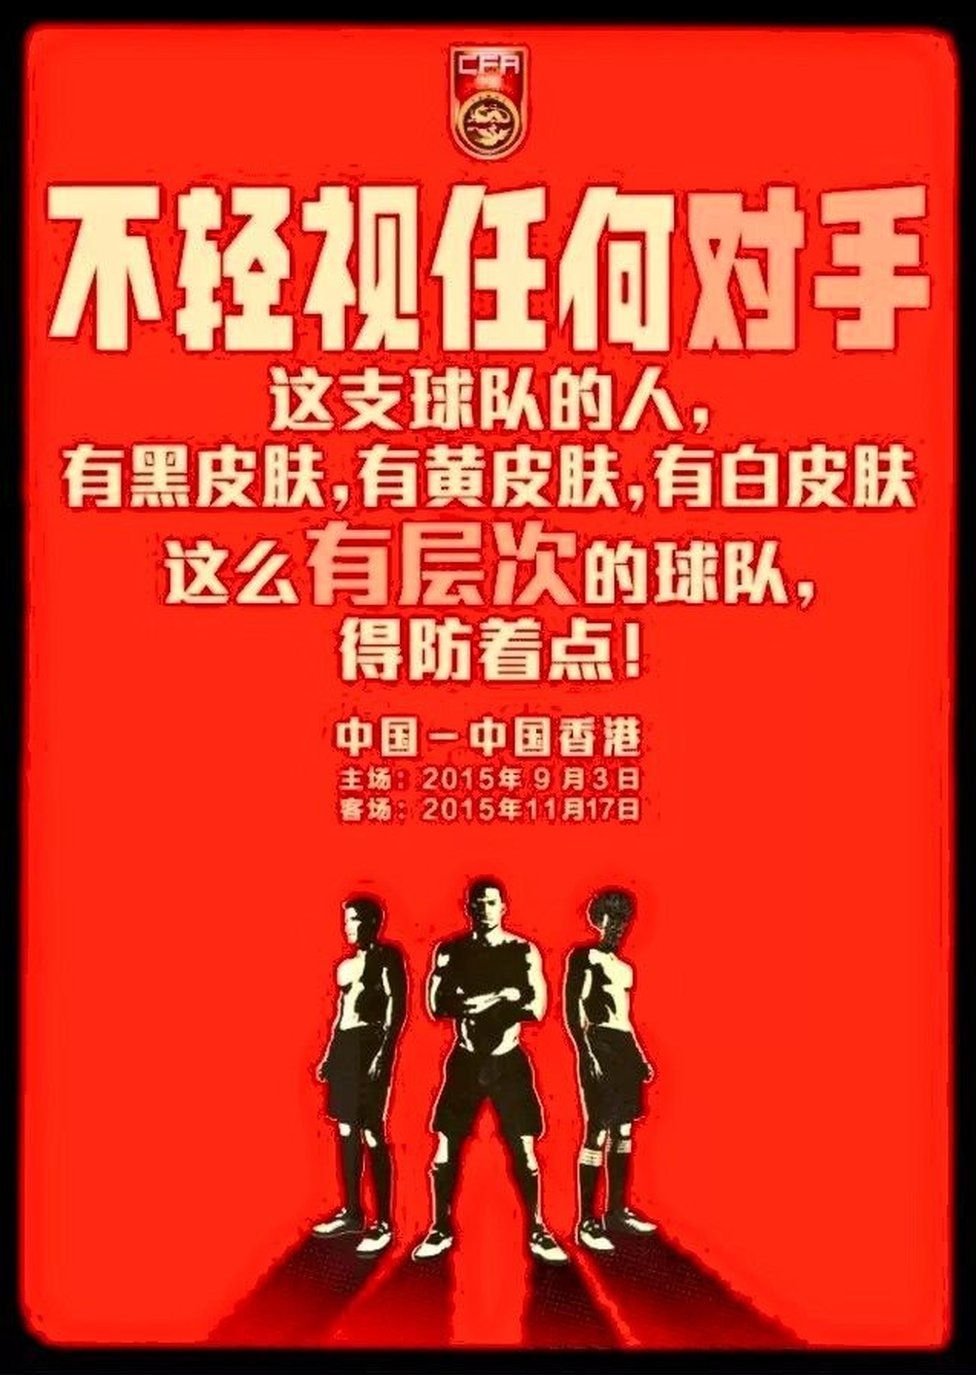 Рекламный плакат Китайской футбольной ассоциации гласит: «В этой команде есть игроки с черной, желтой и белой кожей. Лучше всего быть начеку против такой многослойной команды!»